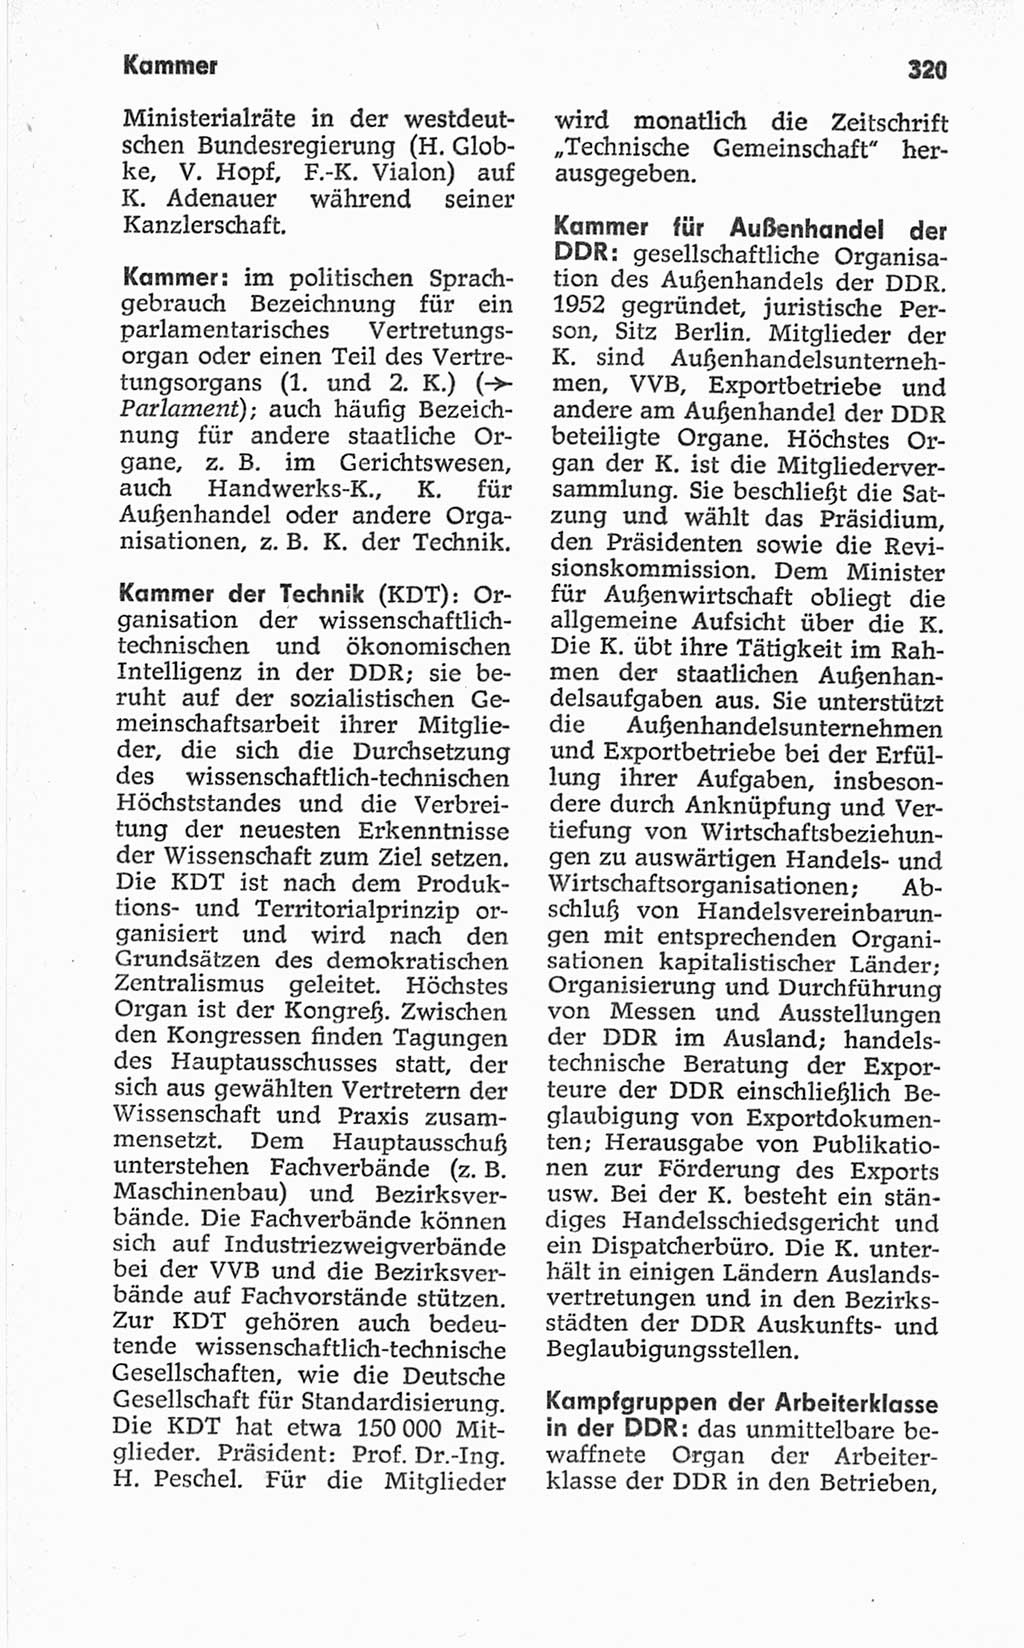 Kleines politisches Wörterbuch [Deutsche Demokratische Republik (DDR)] 1967, Seite 320 (Kl. pol. Wb. DDR 1967, S. 320)